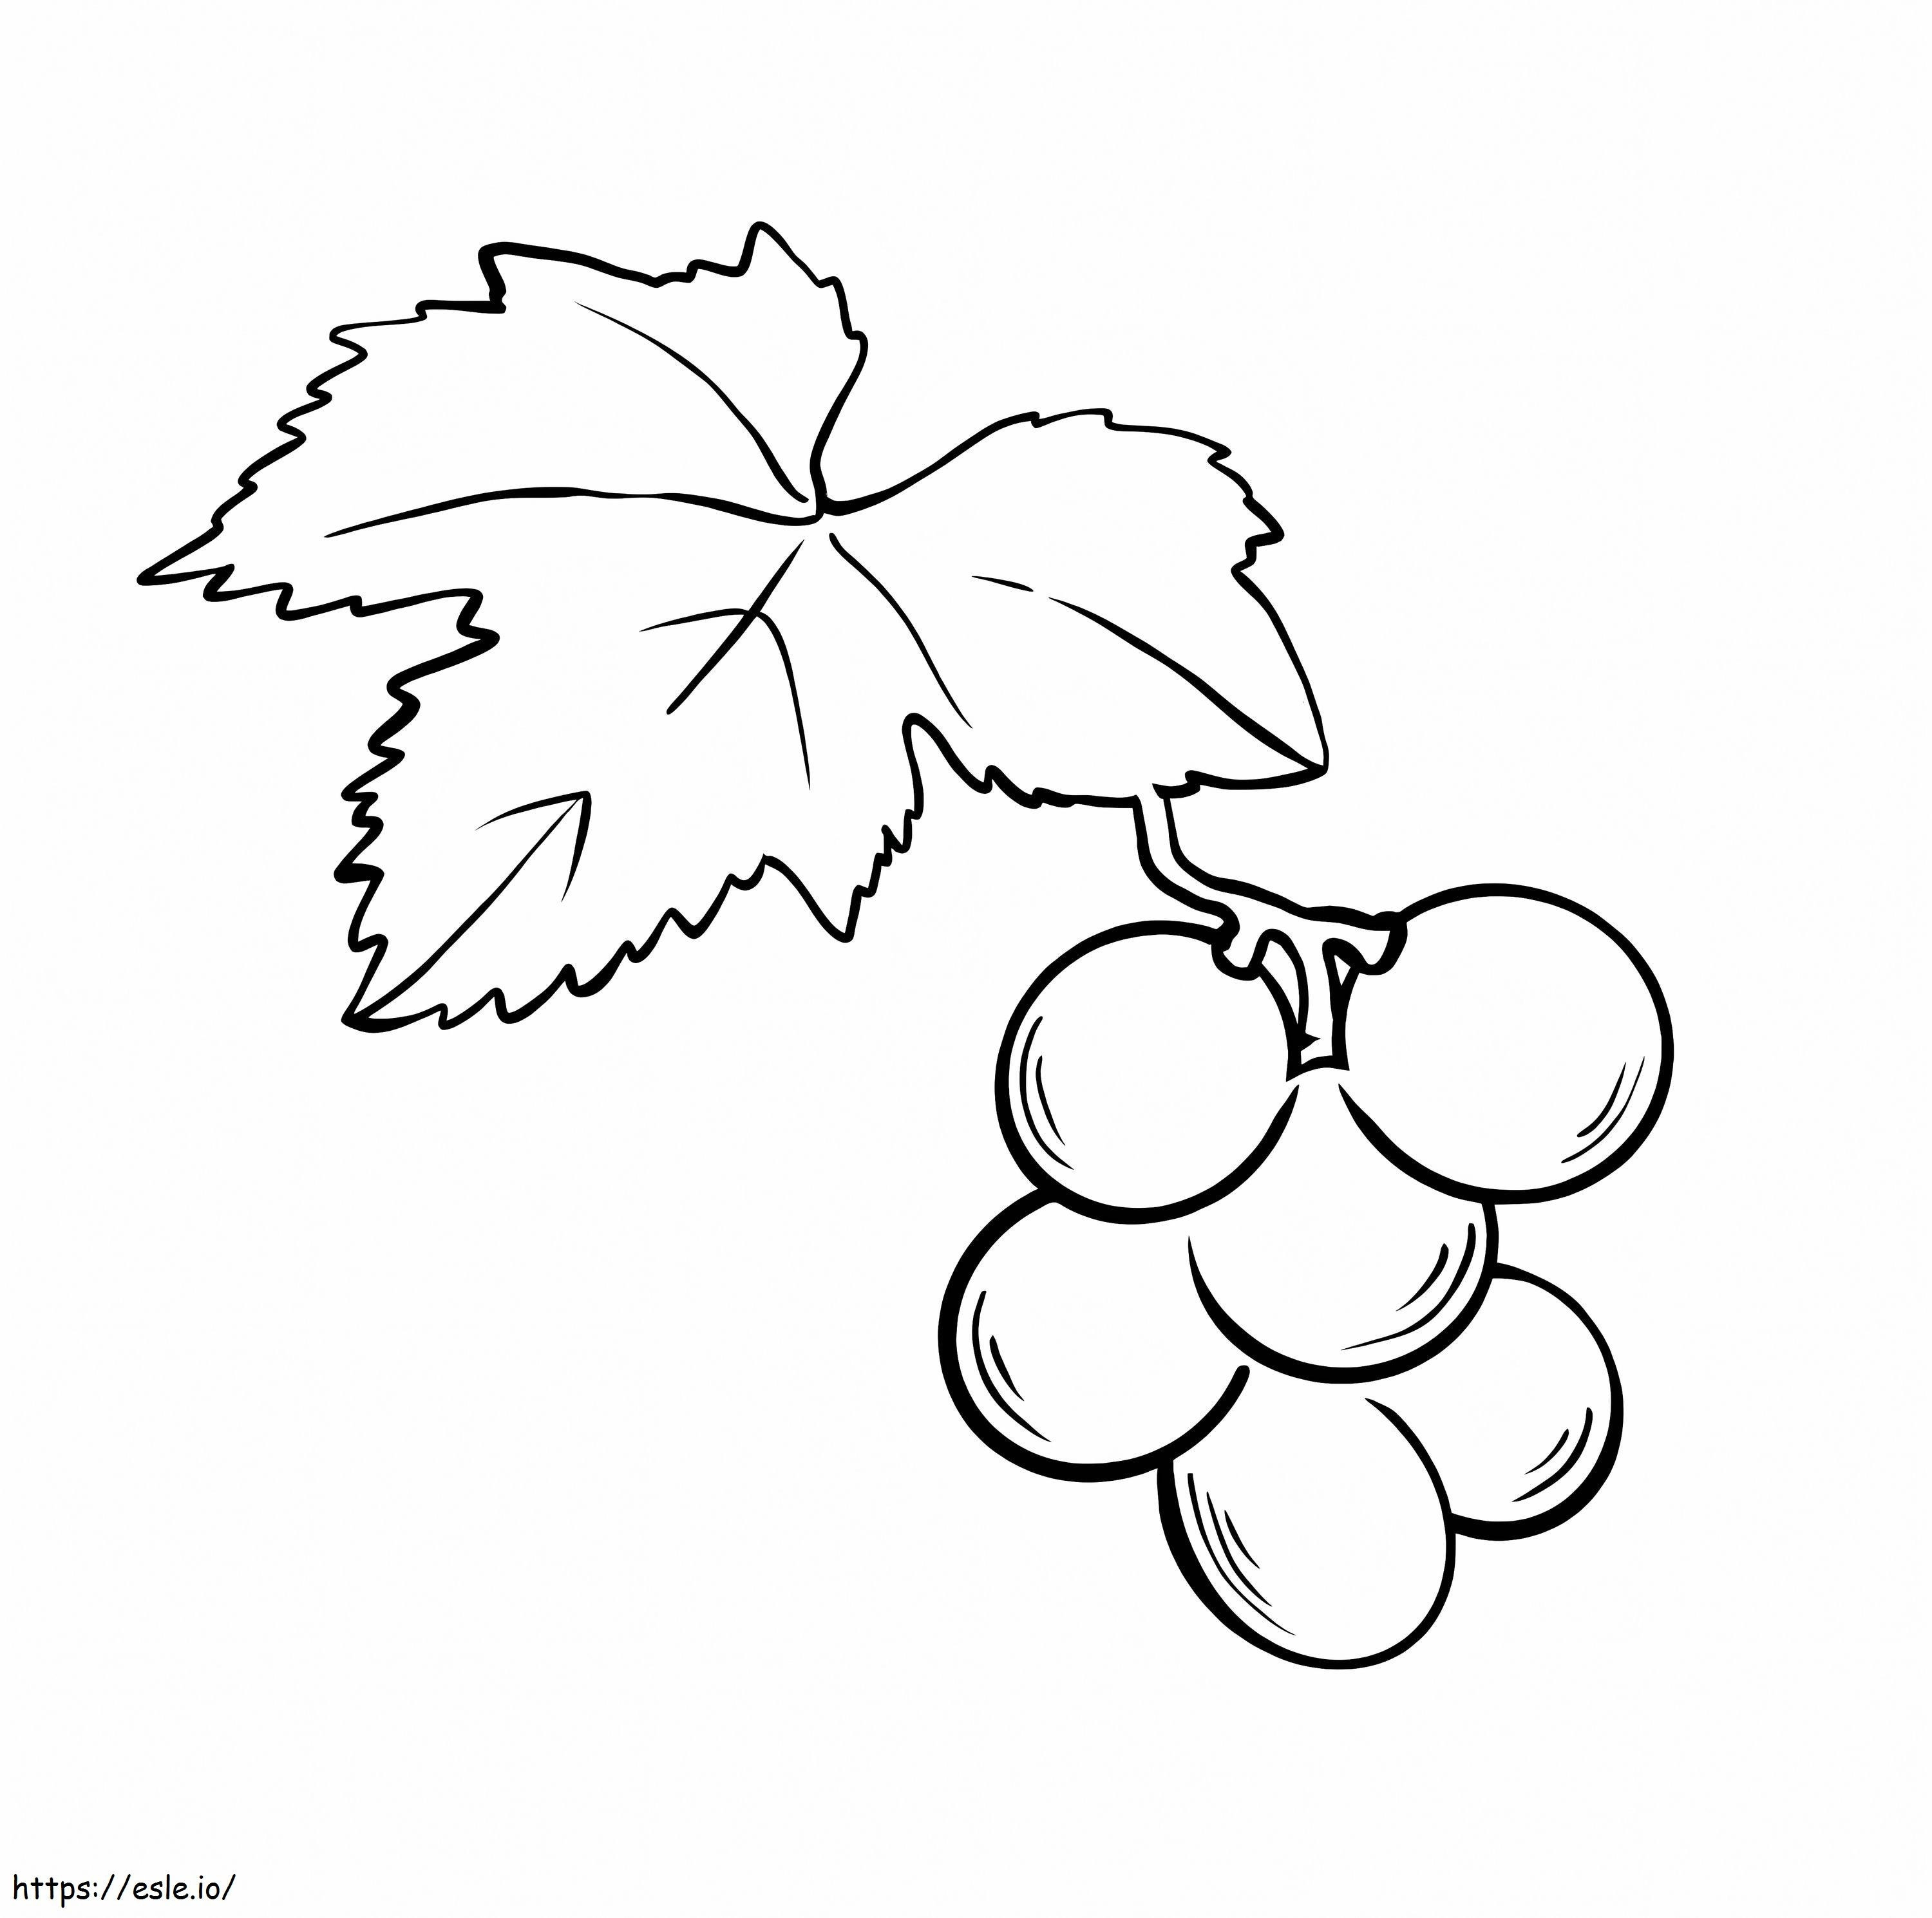 Coloriage Raisins avec feuille à imprimer dessin